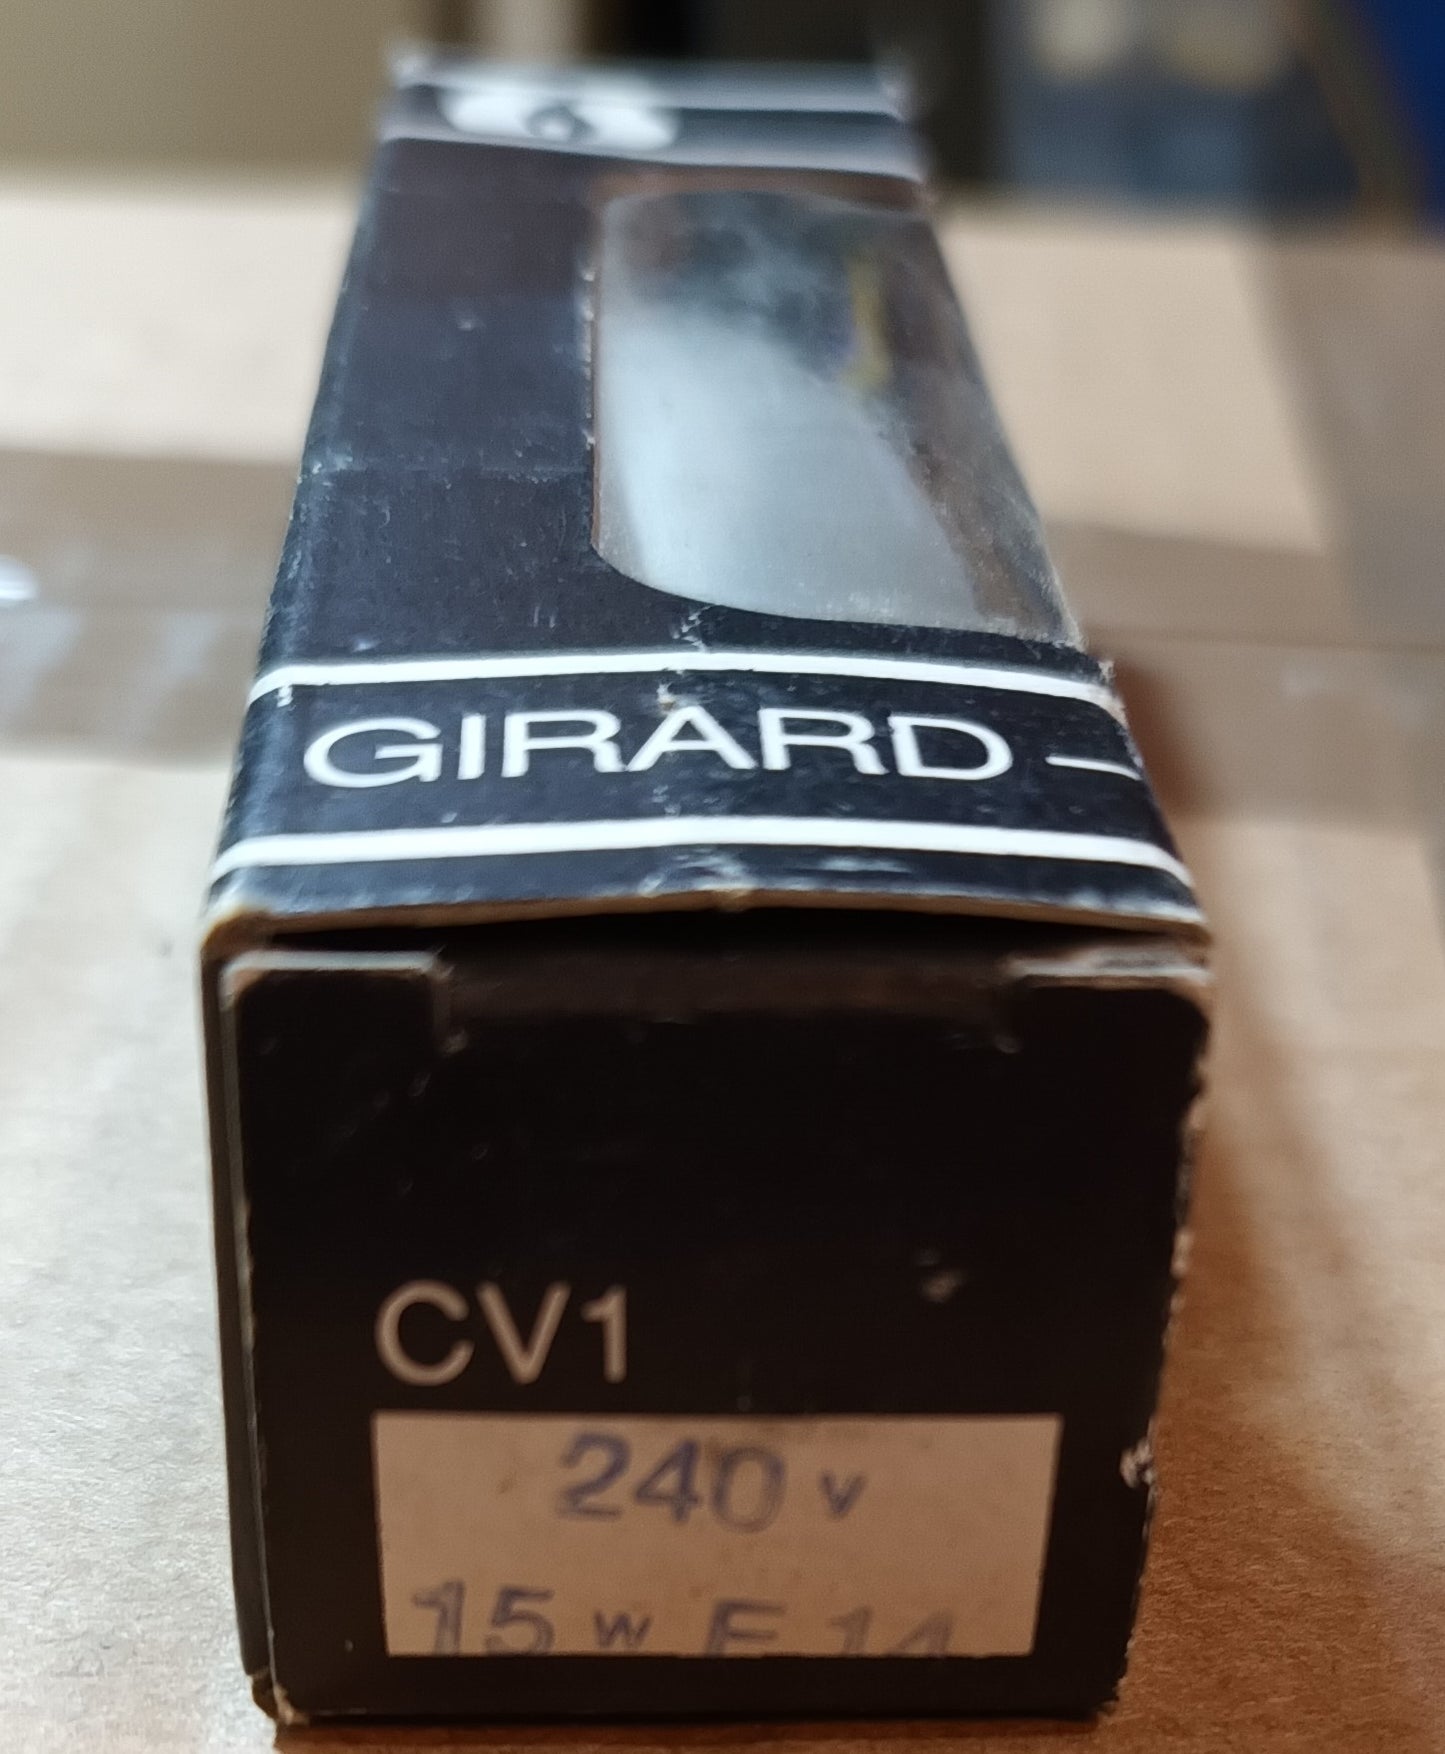 Girard Sudron 15watt E14 240V CV1 Opal Bent Tip Candle only £2